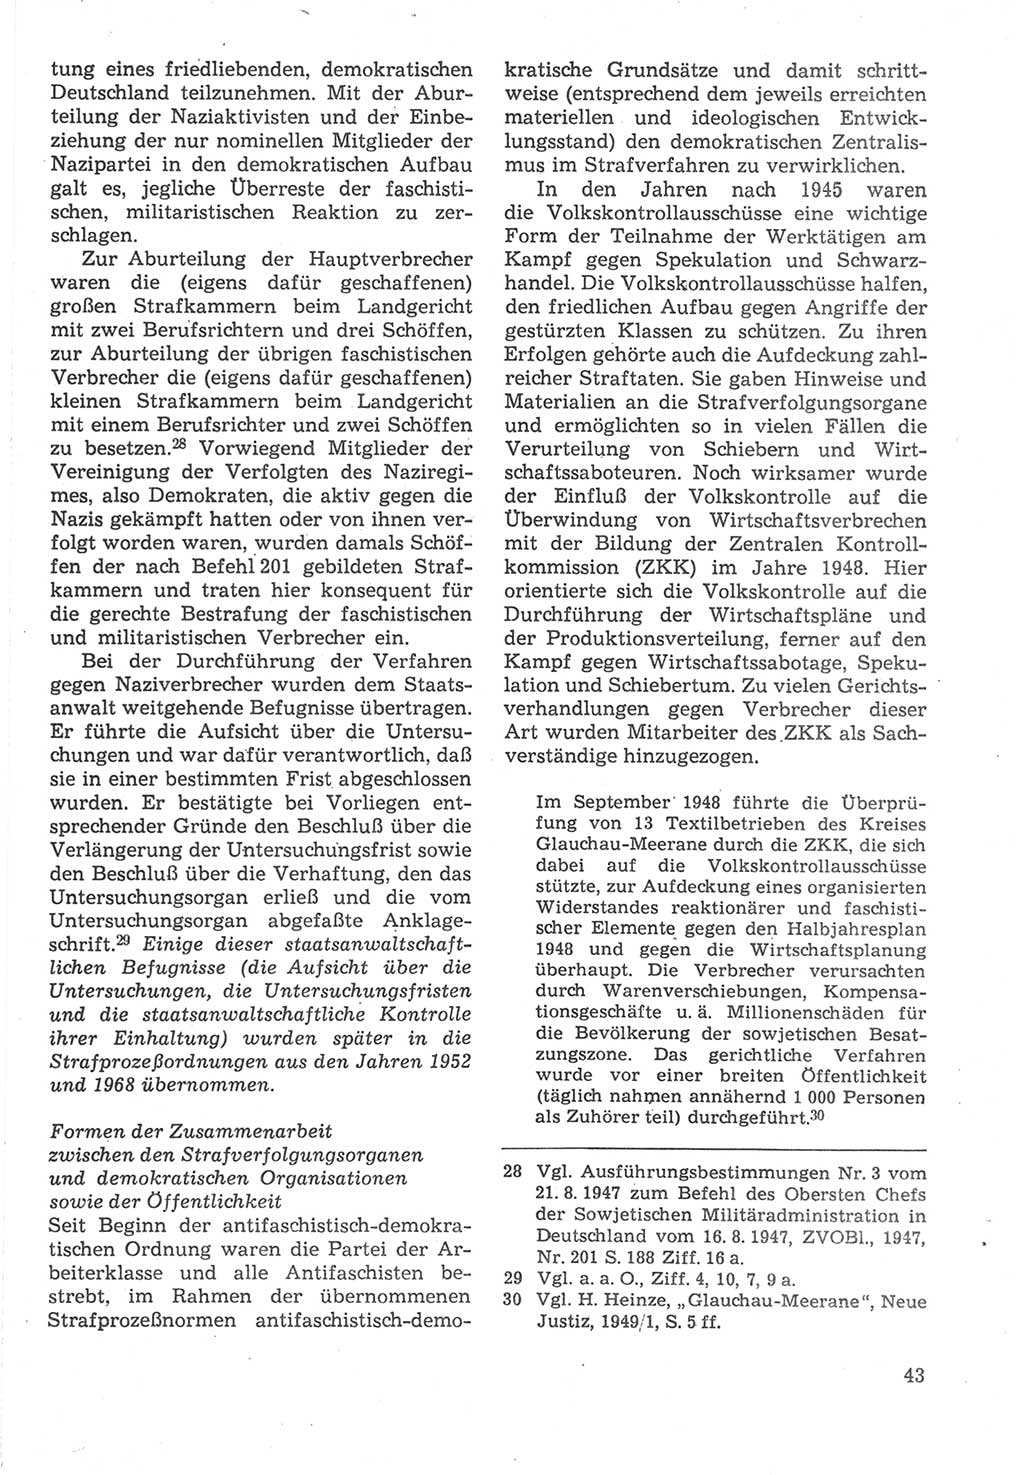 Strafverfahrensrecht [Deutsche Demokratische Republik (DDR)], Lehrbuch 1987, Seite 43 (Strafverf.-R. DDR Lb. 1987, S. 43)